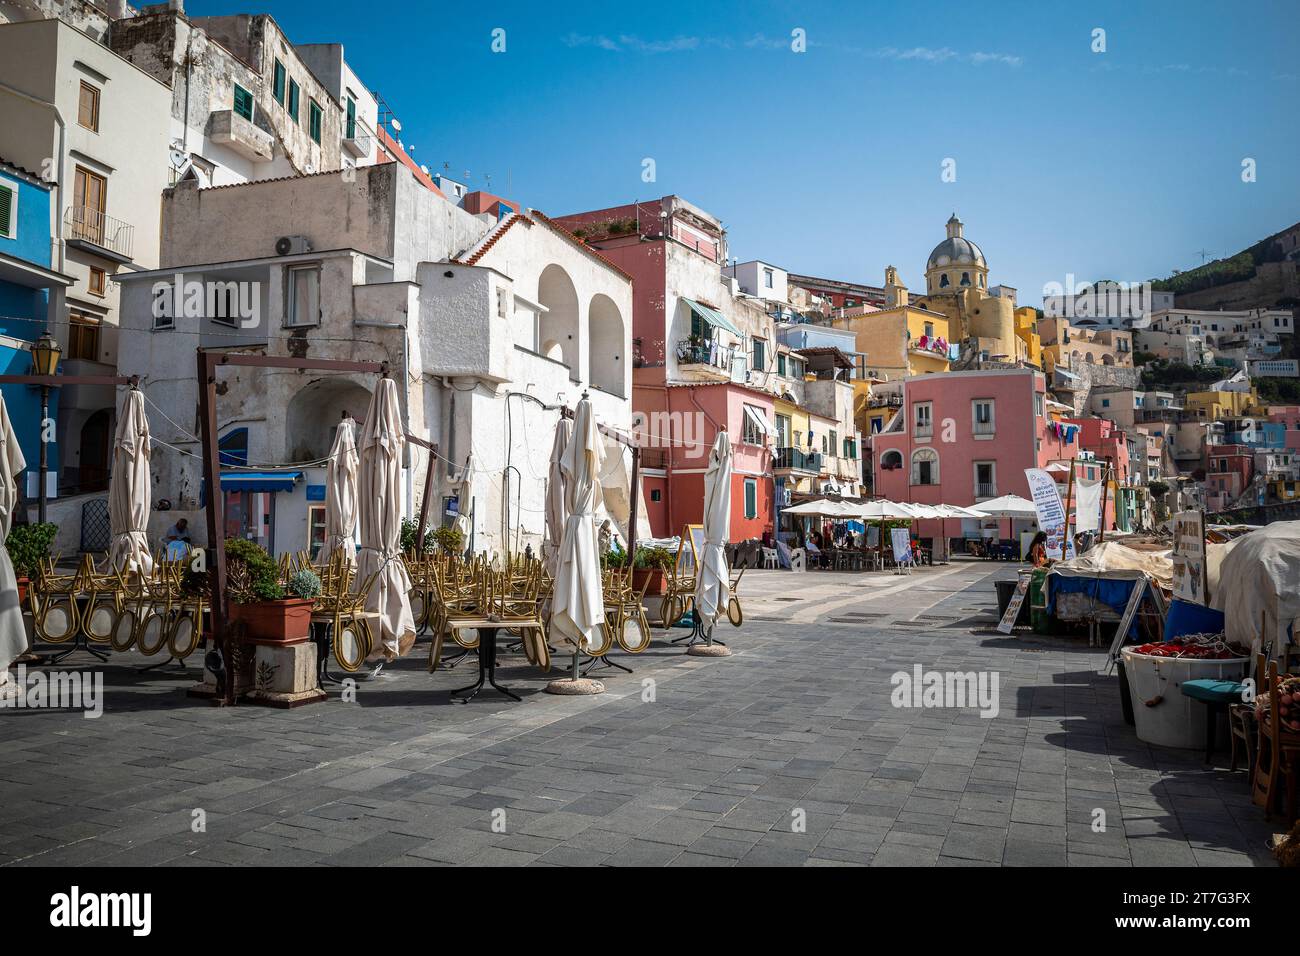 Procida è una bellissima isola italiana nel Golfo di Napoli fiancheggiata da splendide case dai colori vivaci Foto Stock